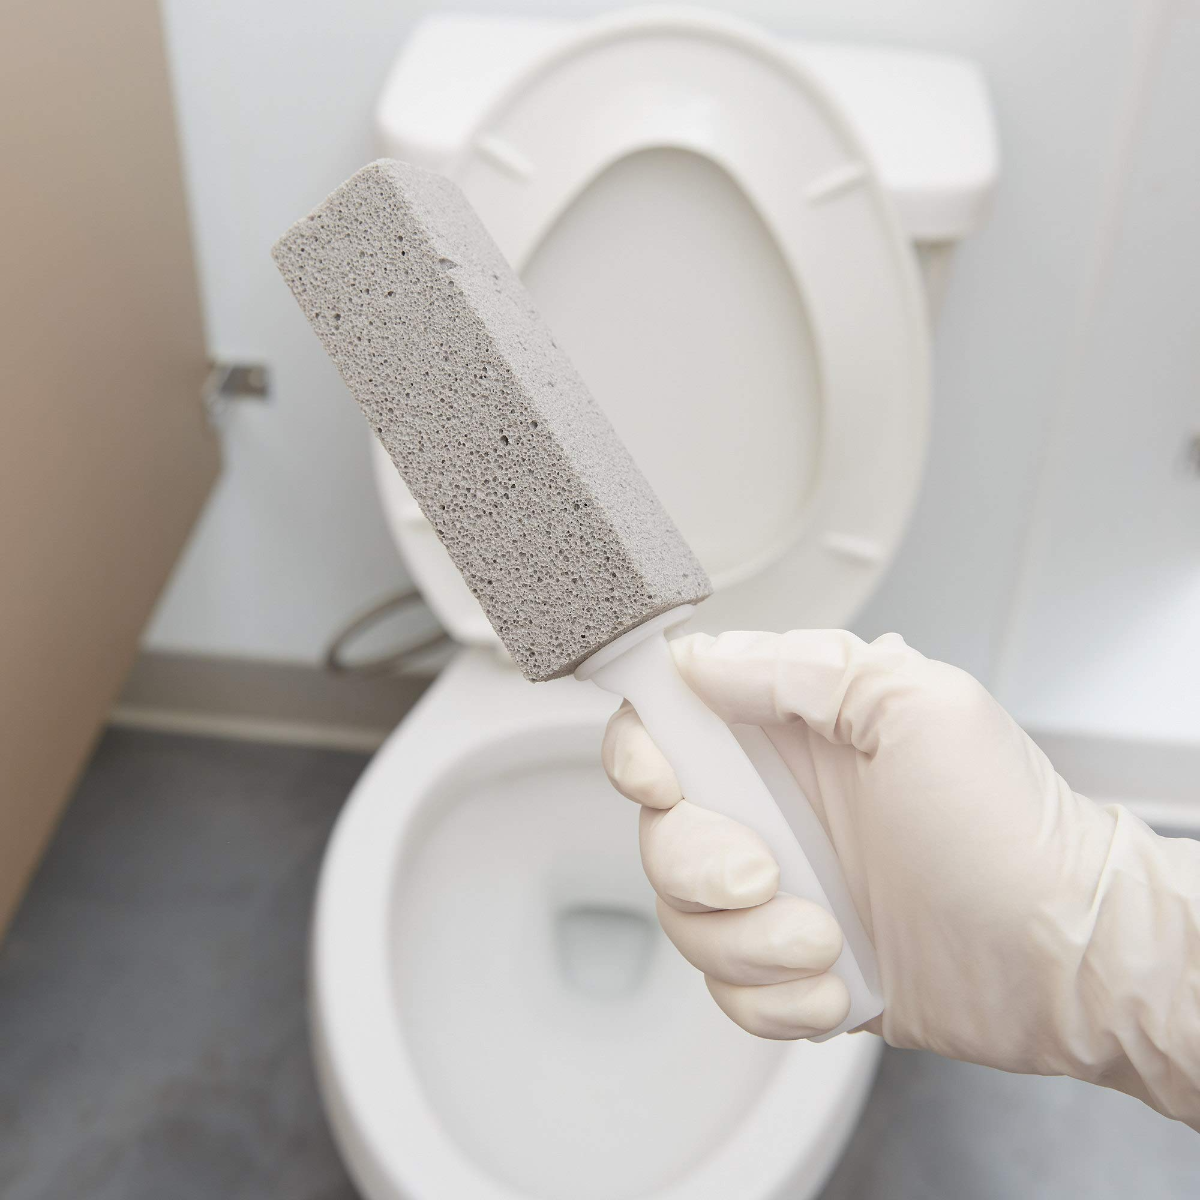 bimsstein zum entfernen von urinstein in der toilette